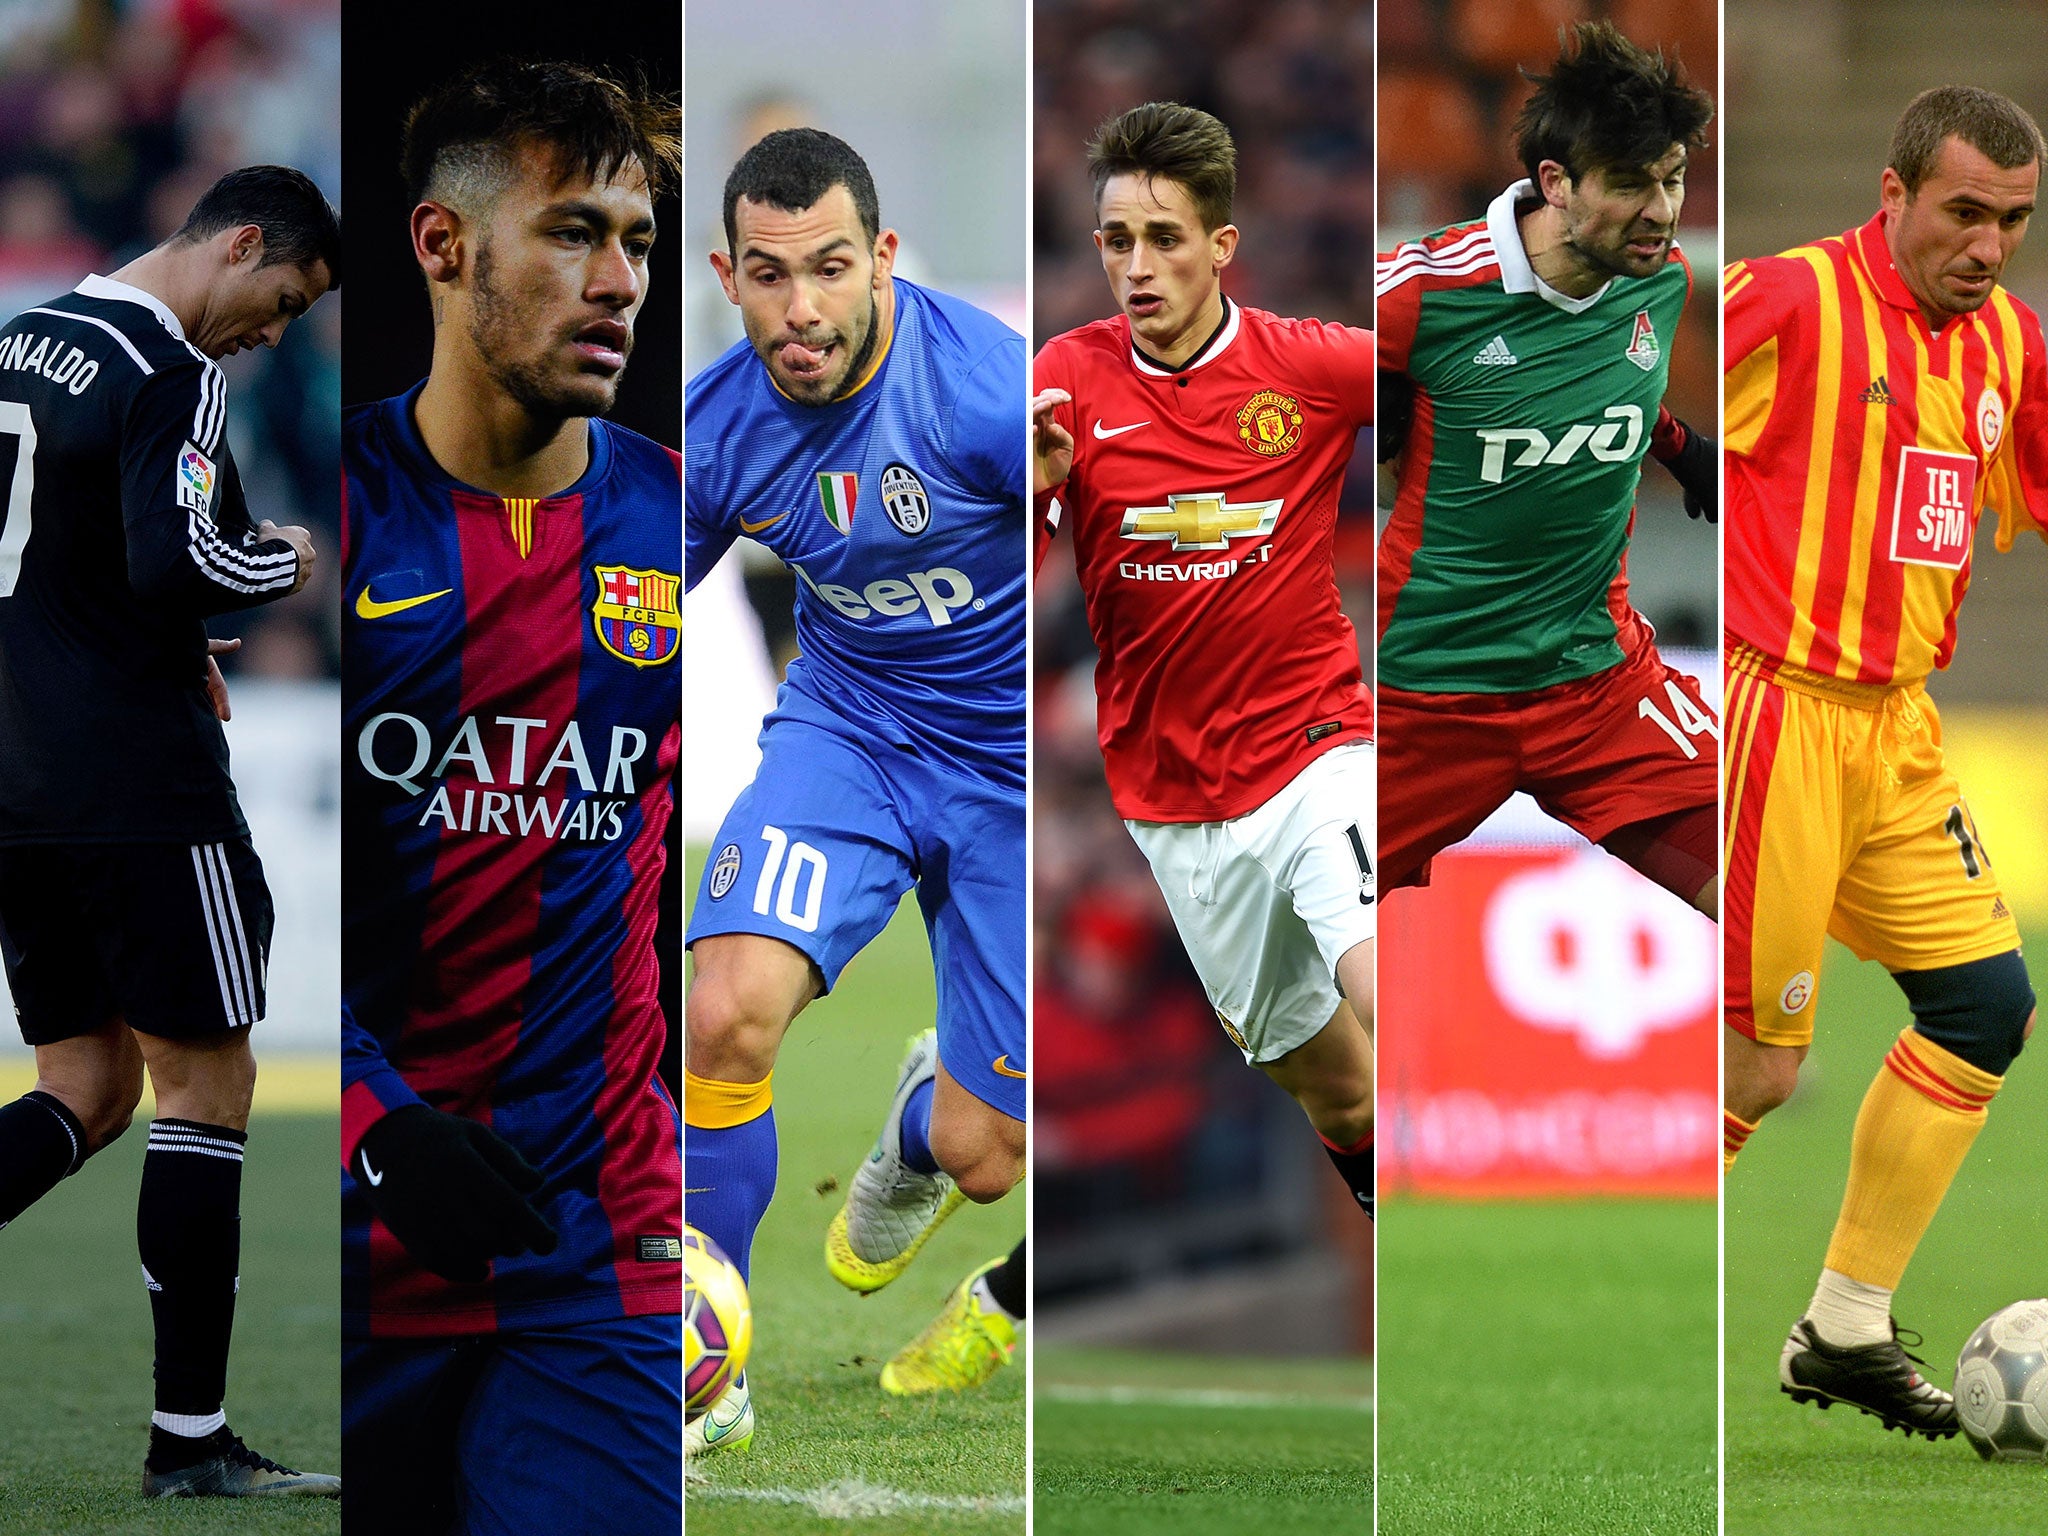 Cristiano Ronaldo, Neymar, Carlos Tevez, Adnan Januzaj, Vedran Corluka and Gheorghe Hagi